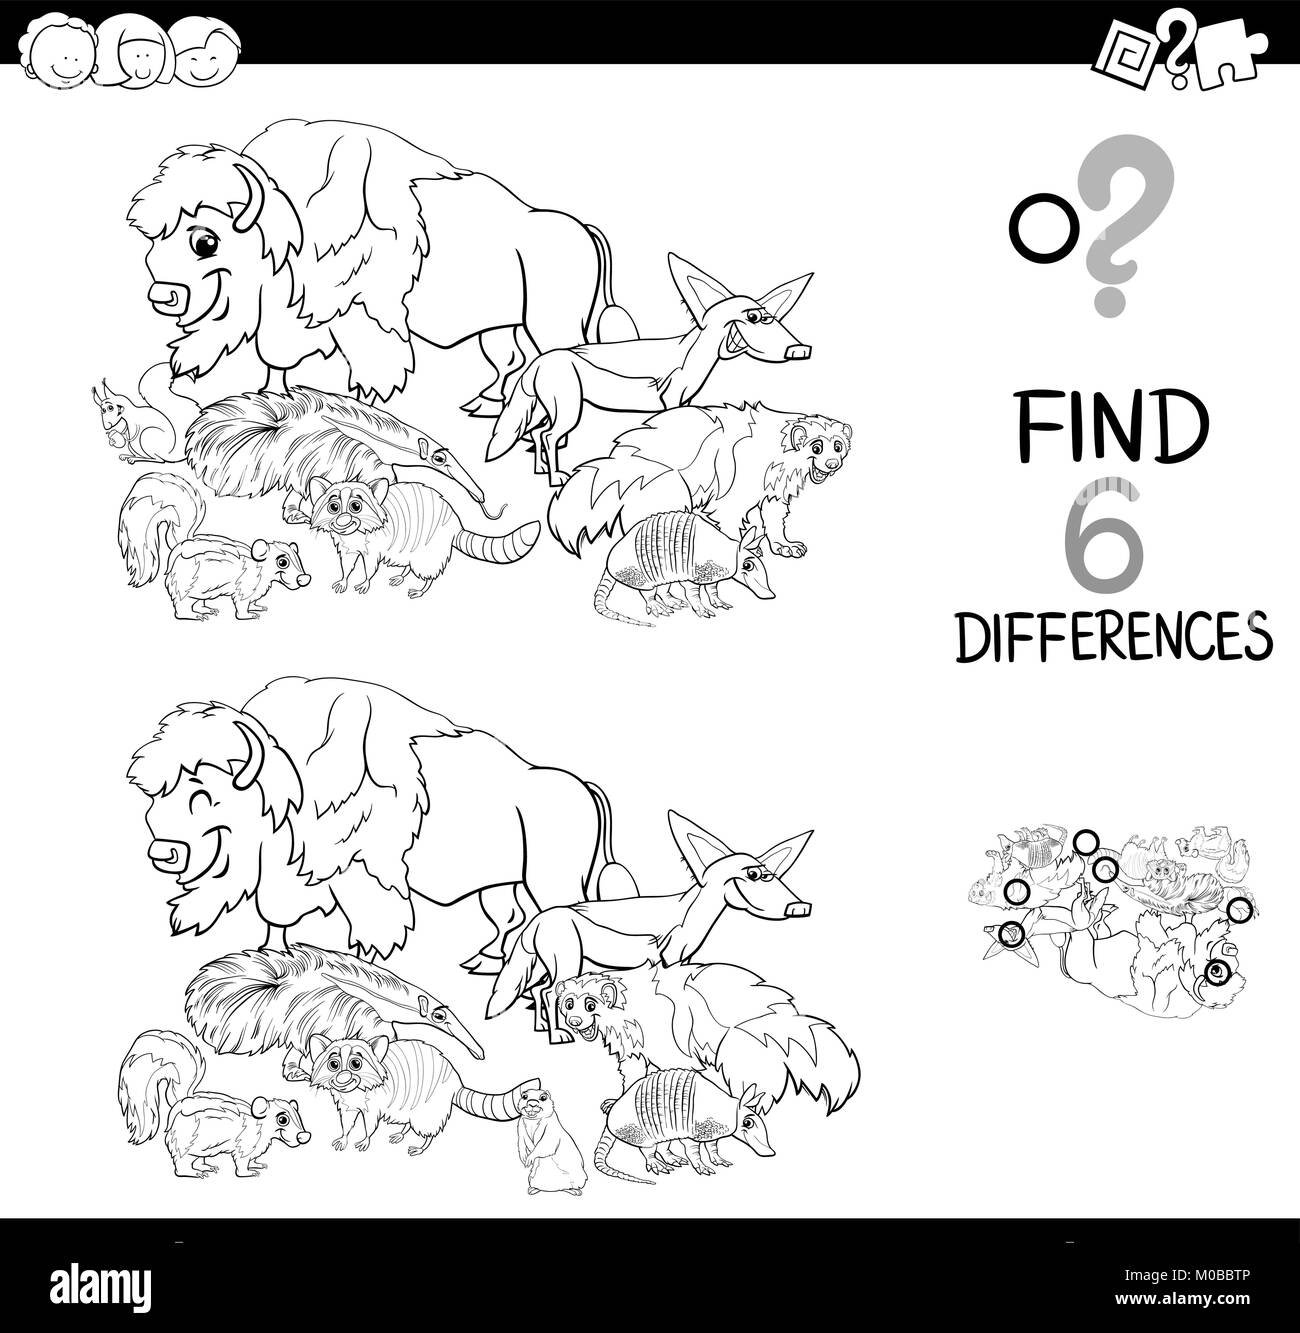 Schwarze und Weiße Cartoon Illustration des Findens von sechs Unterschiede zwischen den Bildern pädagogische Tätigkeit Spiel für Kinder mit wilden Tier Zeichen Gruppe Stock Vektor